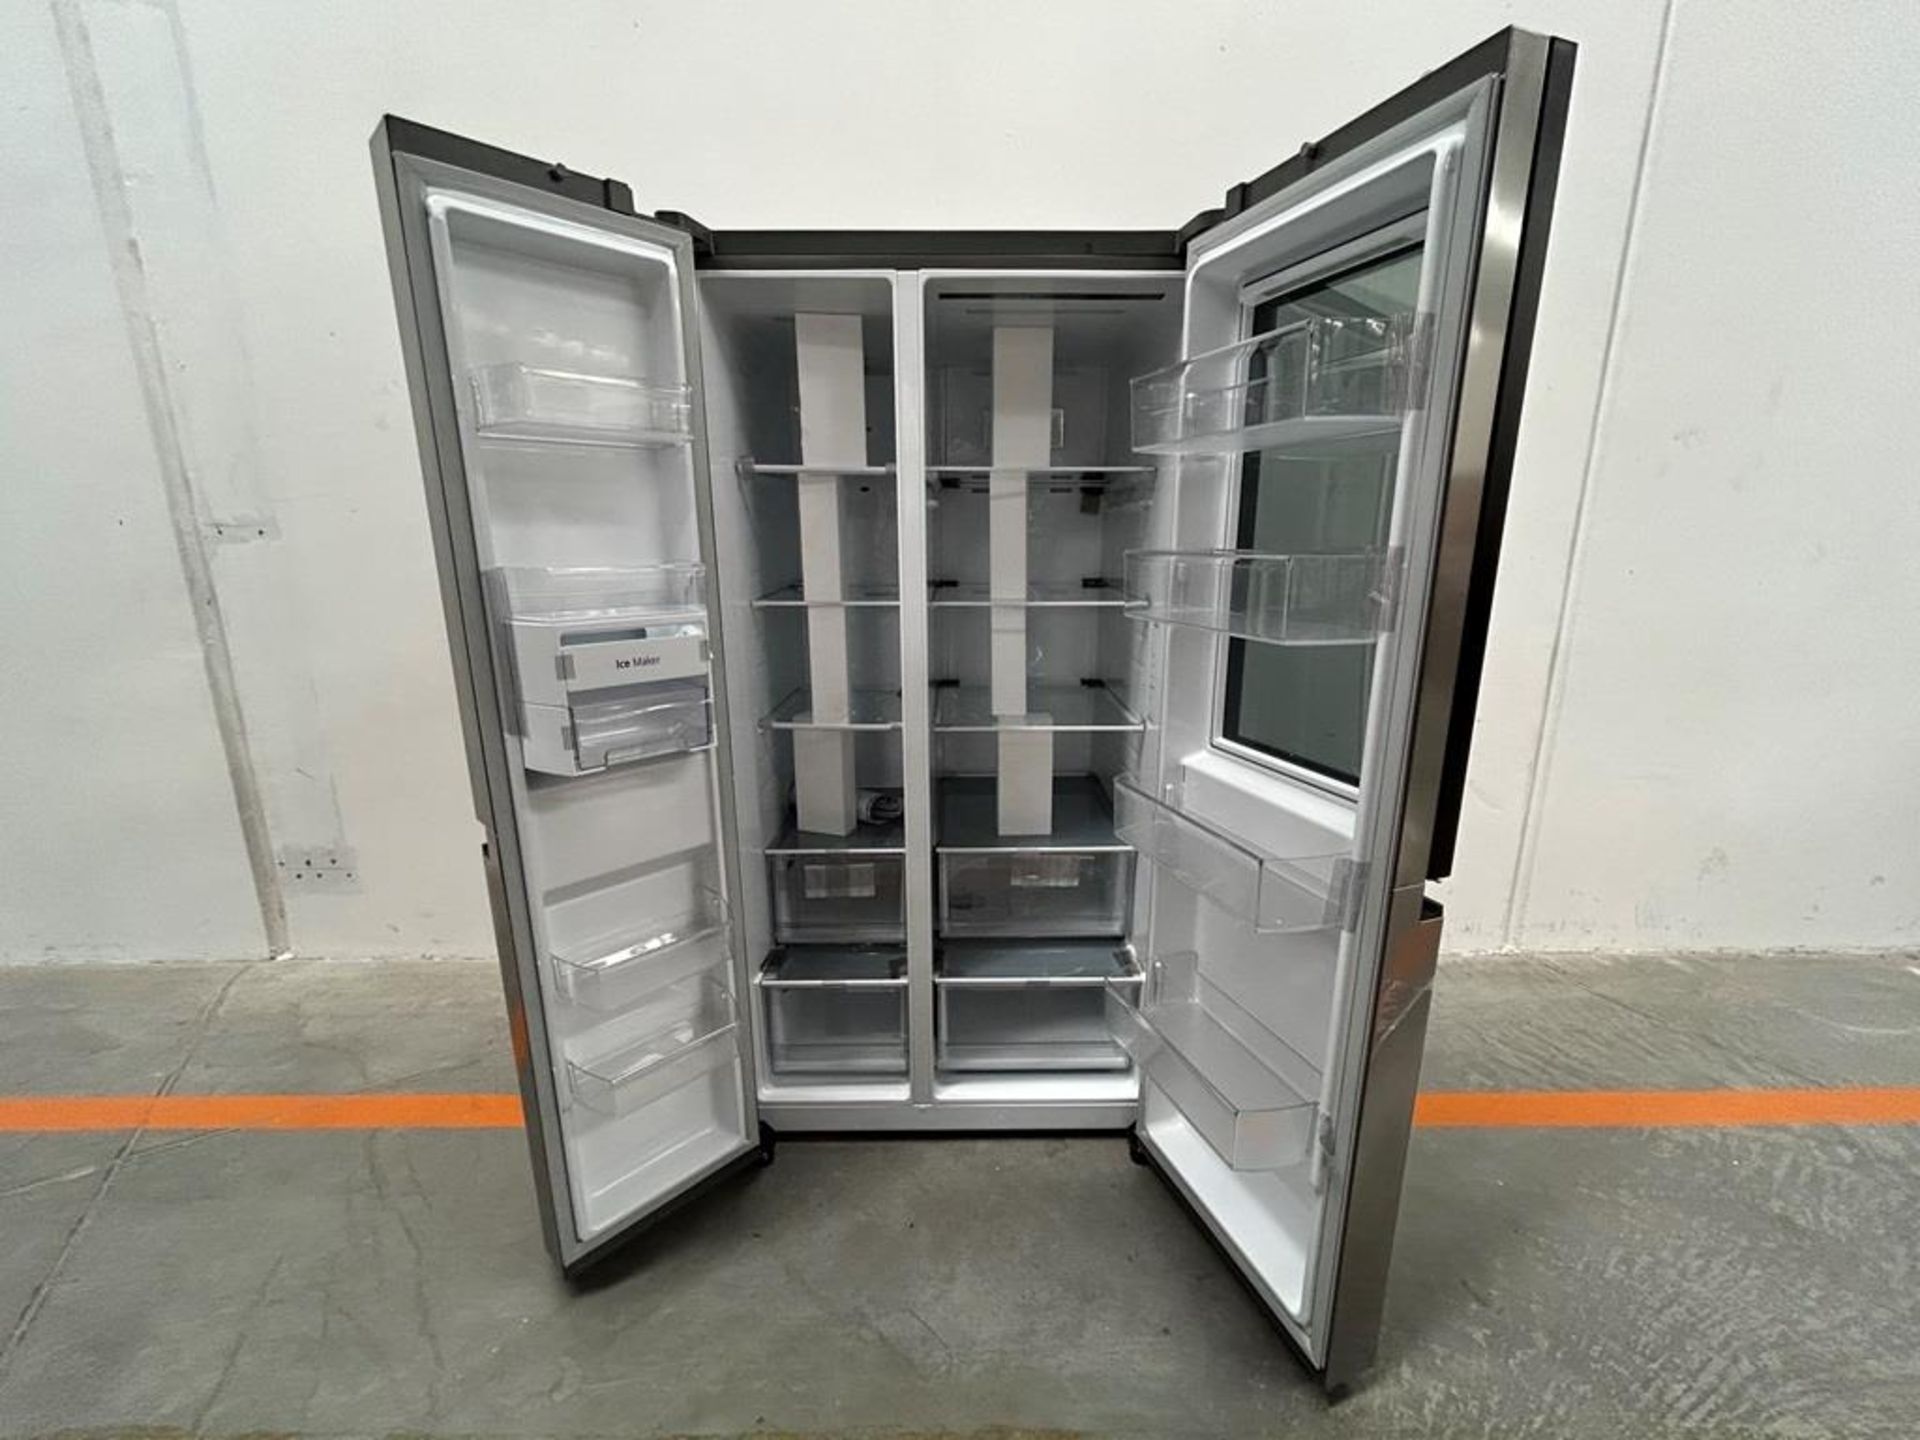 (NUEVO) Refrigerador Marca LG, Modelo VS27BXQP, Serie 22453, Color GRIS - Image 4 of 8